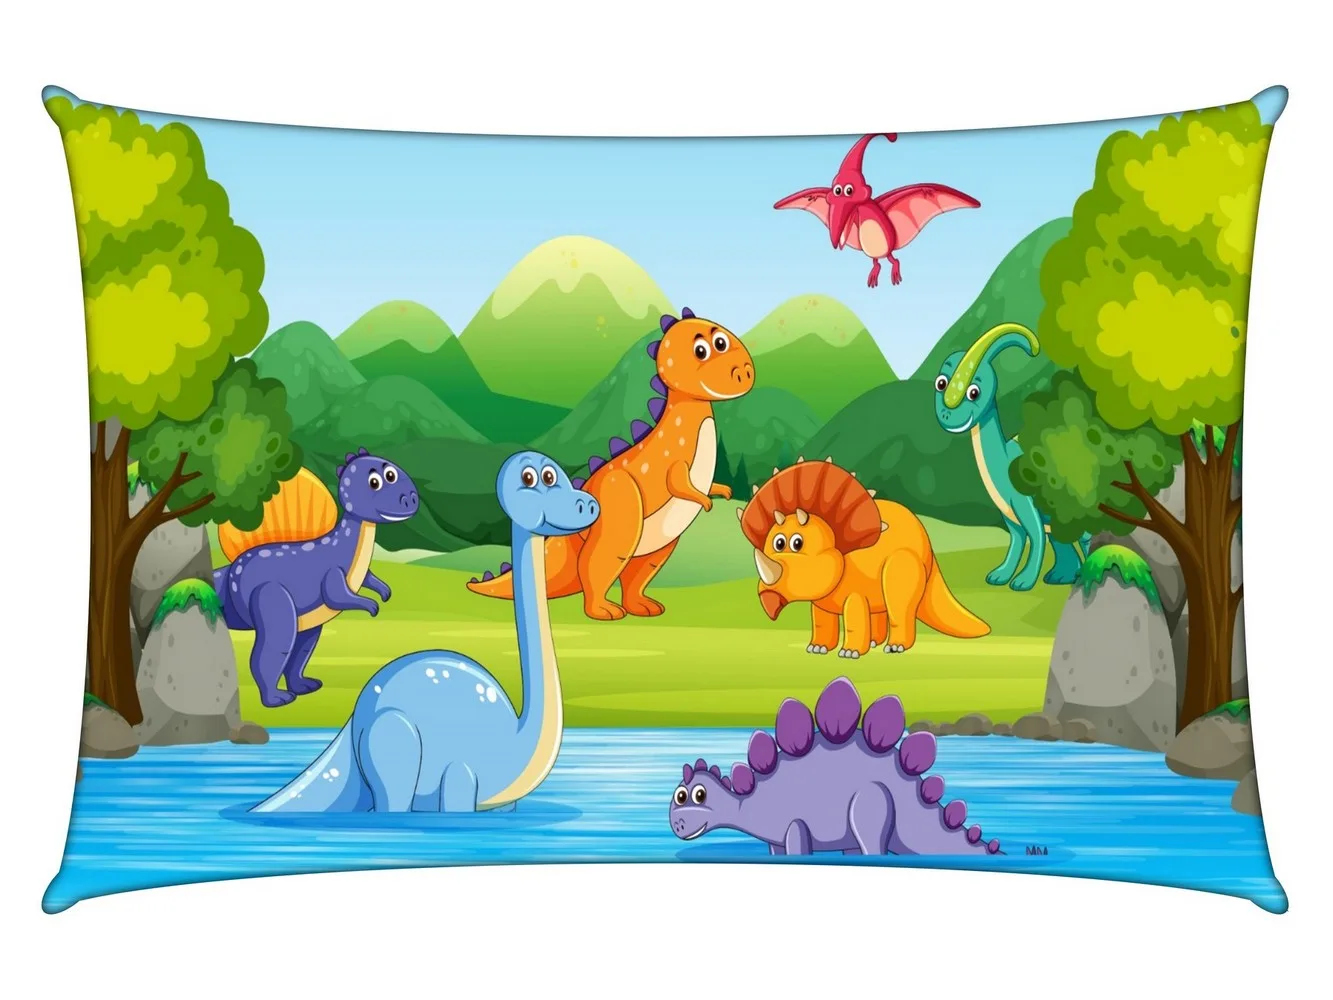 Dinosaur Kids Cartoon Pillow Cover, 18x12